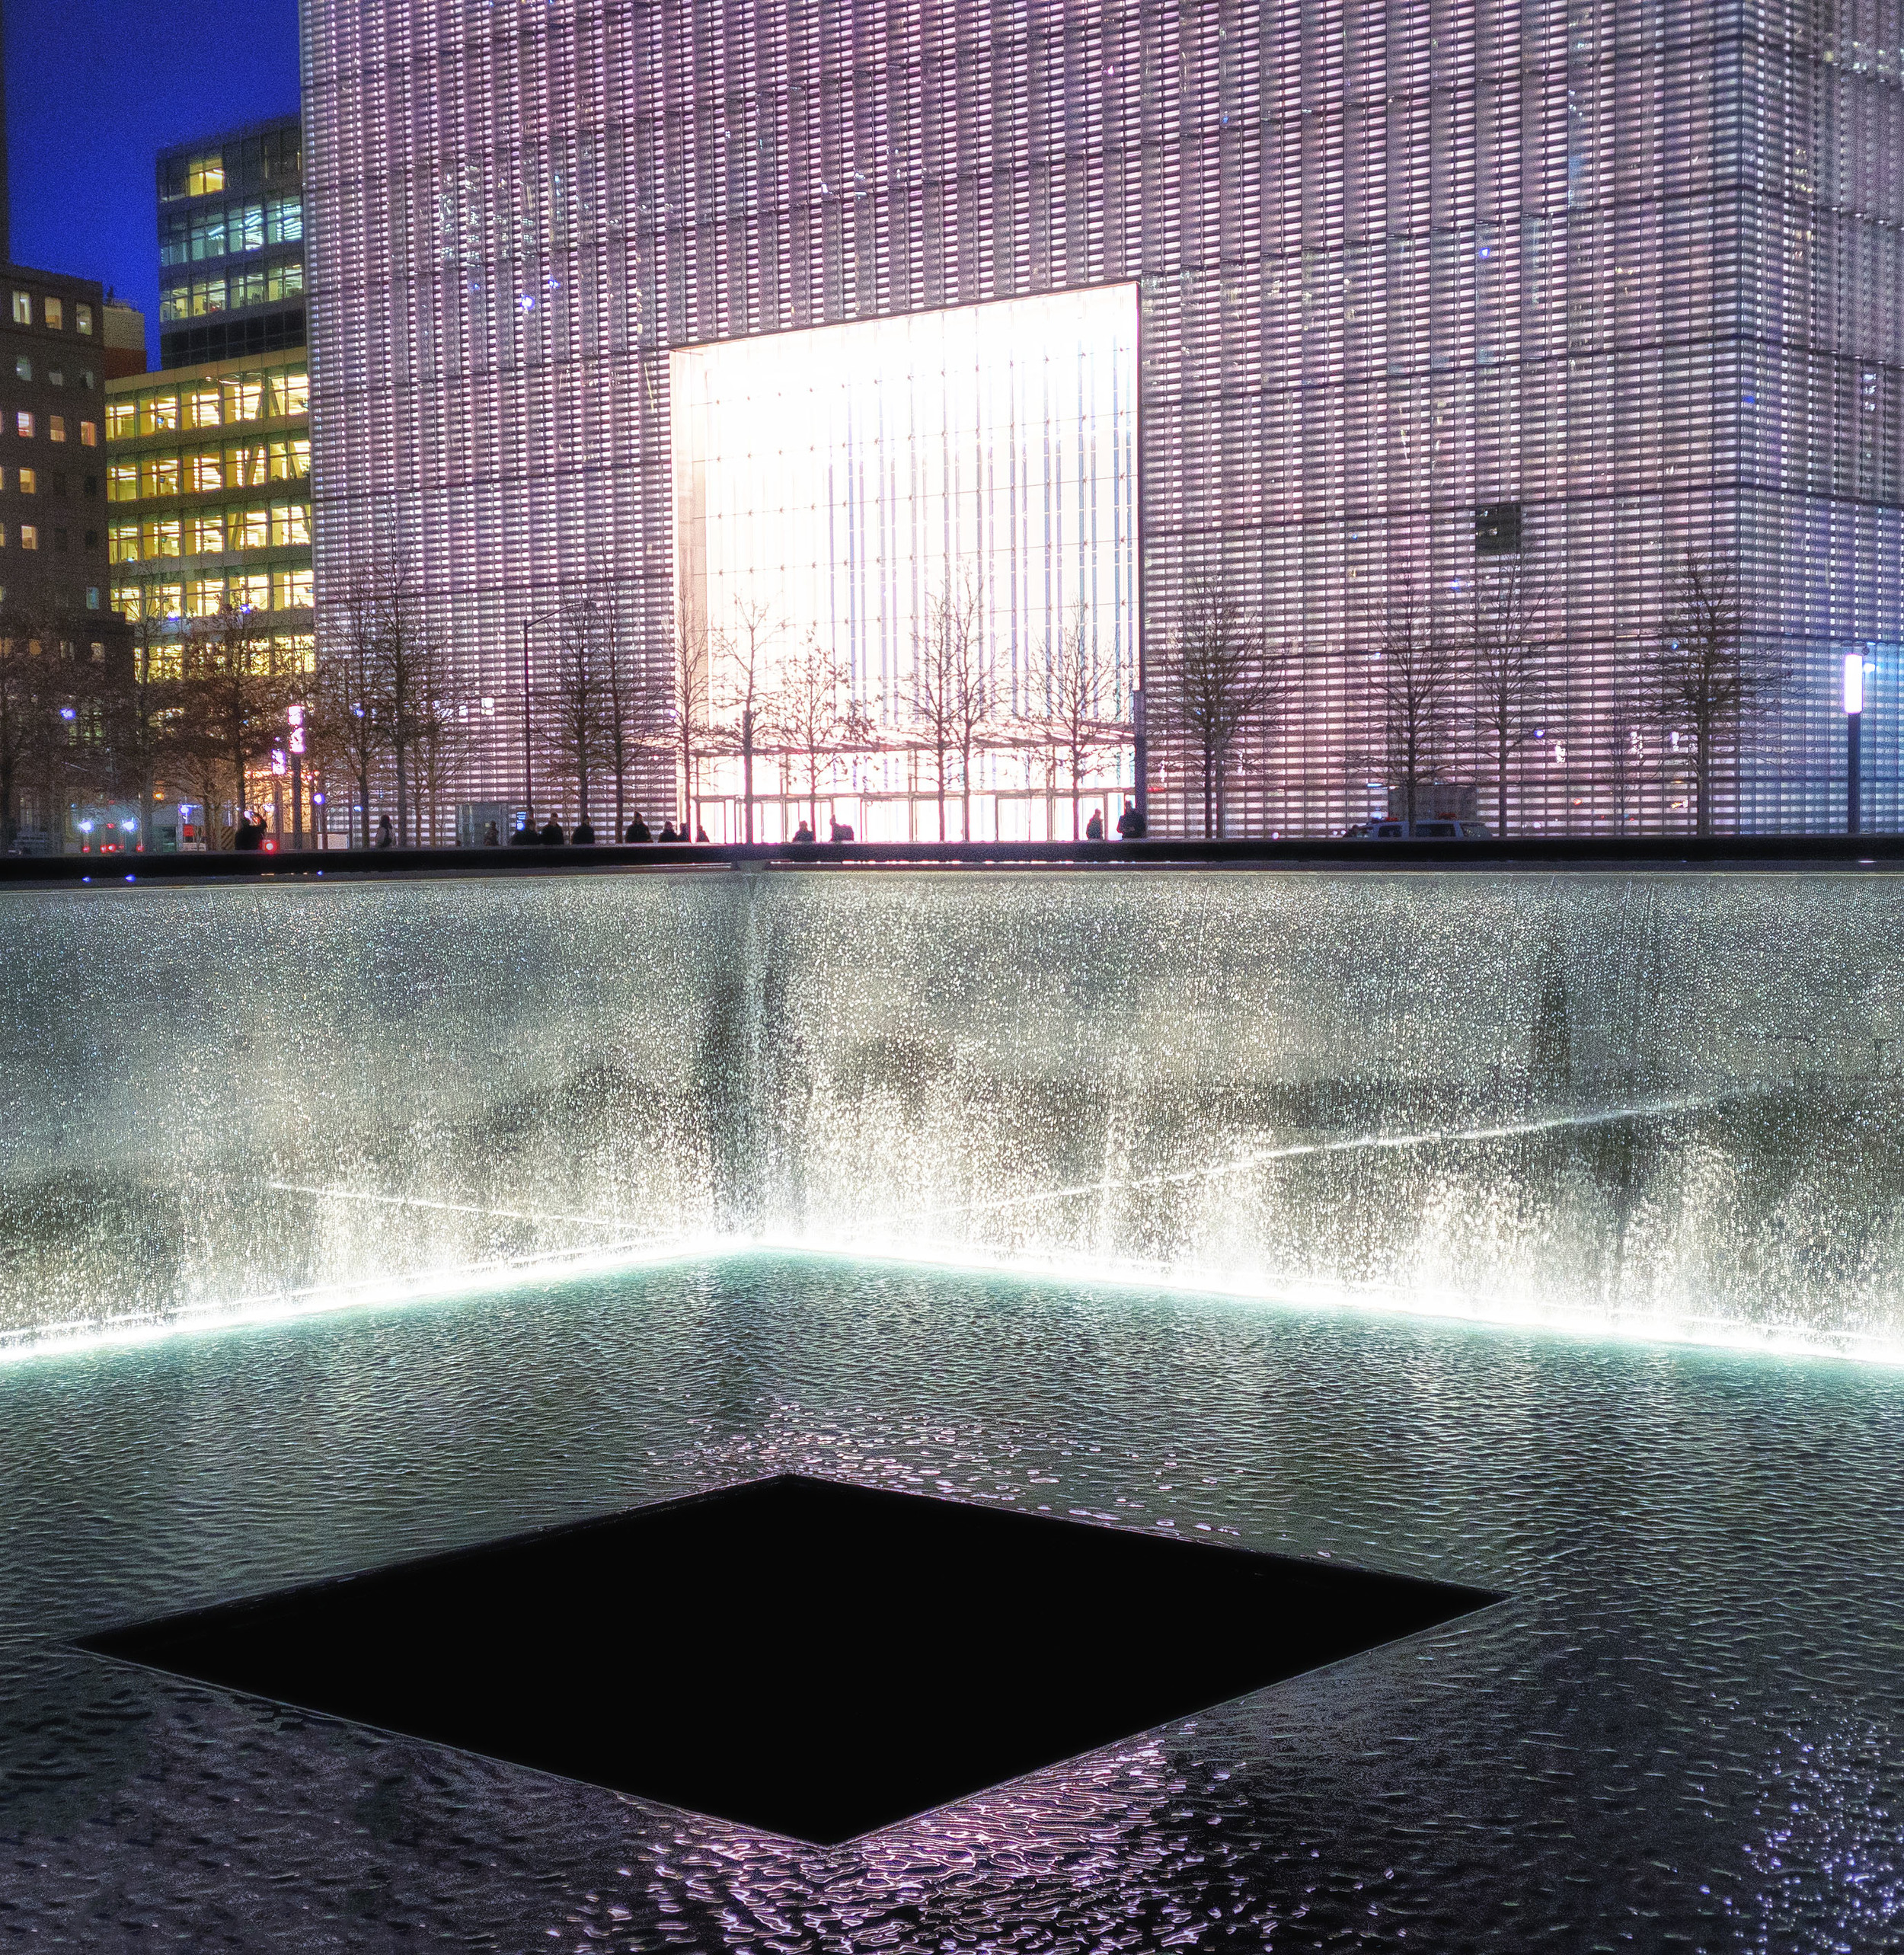 911 Memorial New York City